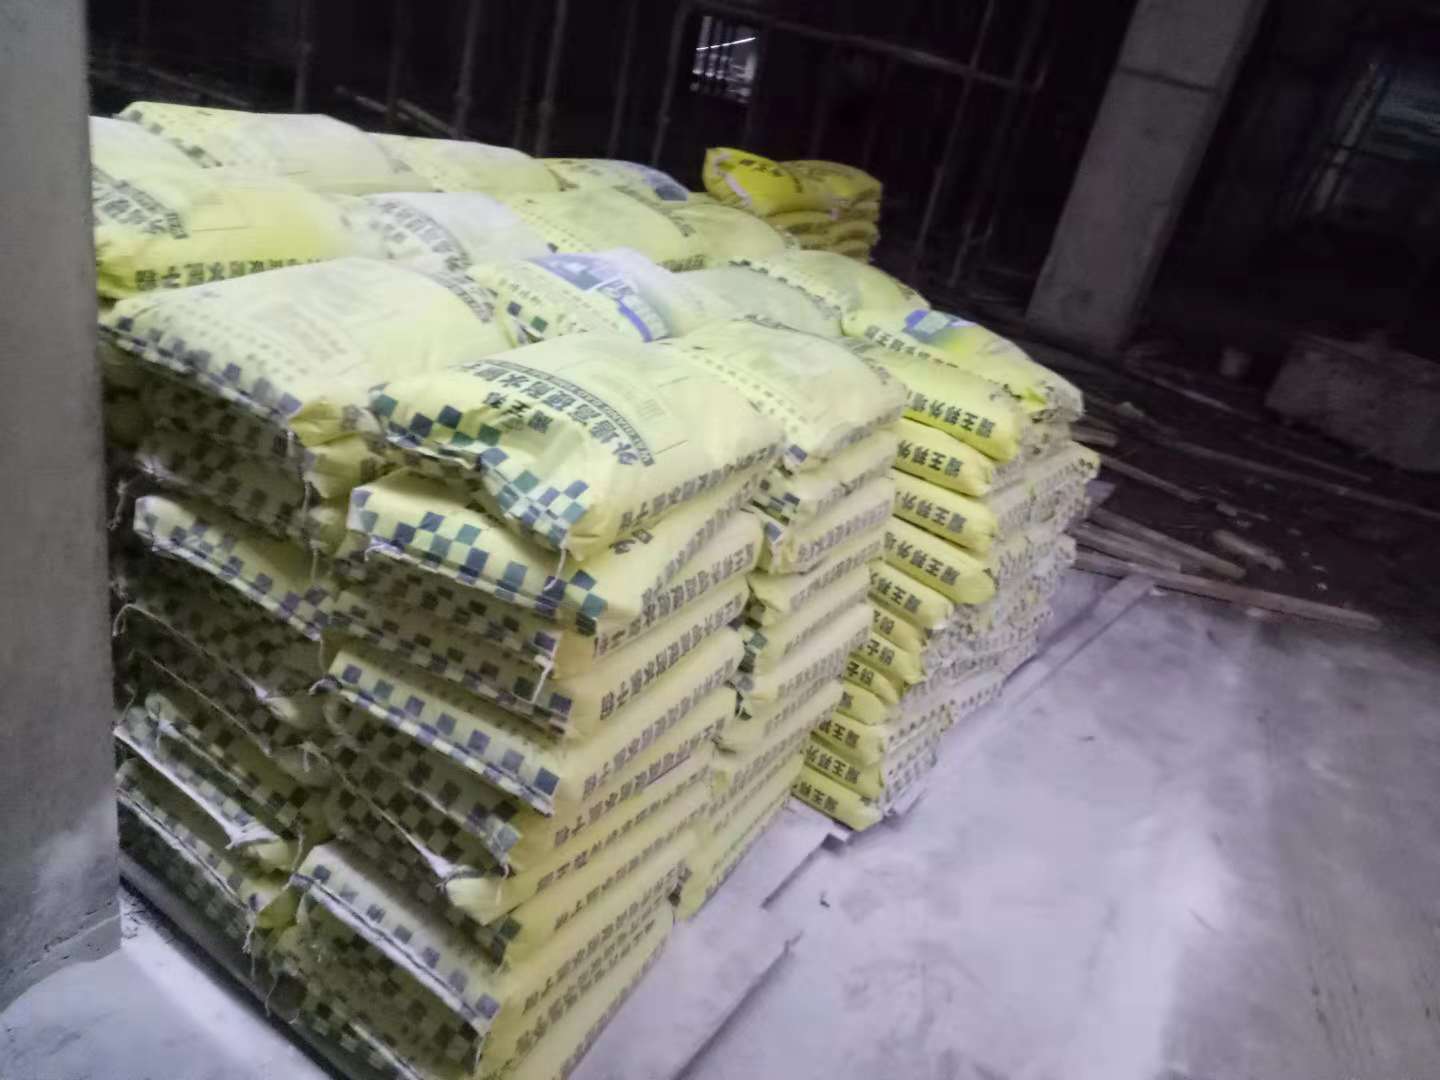 广州腻子粉生产厂家花都腻子粉供应商广州外墙抗裂腻子粉价格